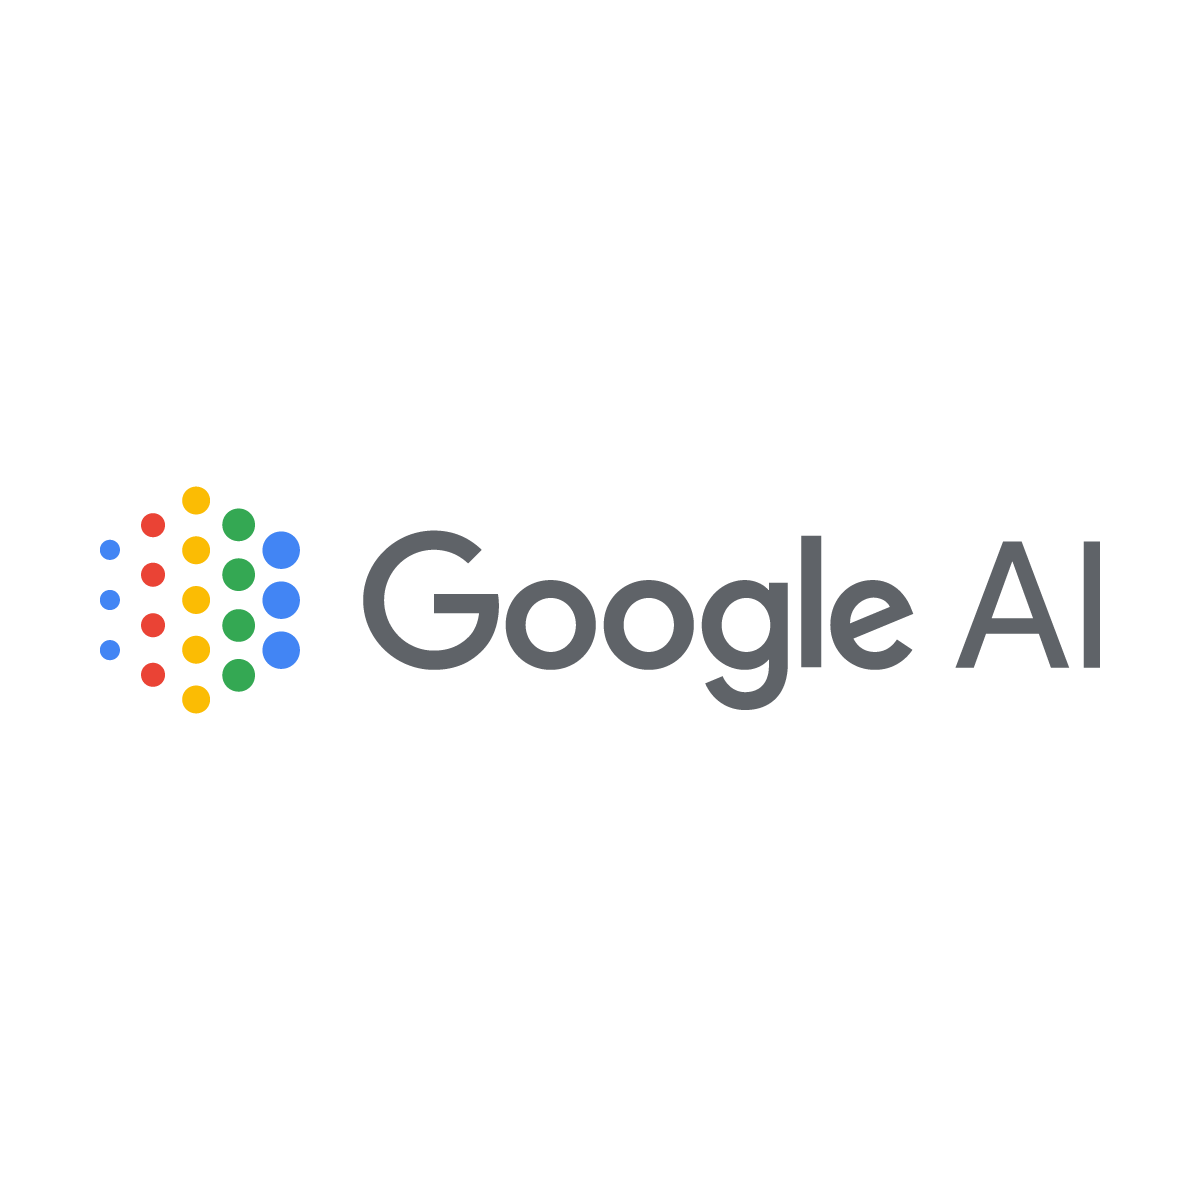 Blog.com Logo - Google AI Blog